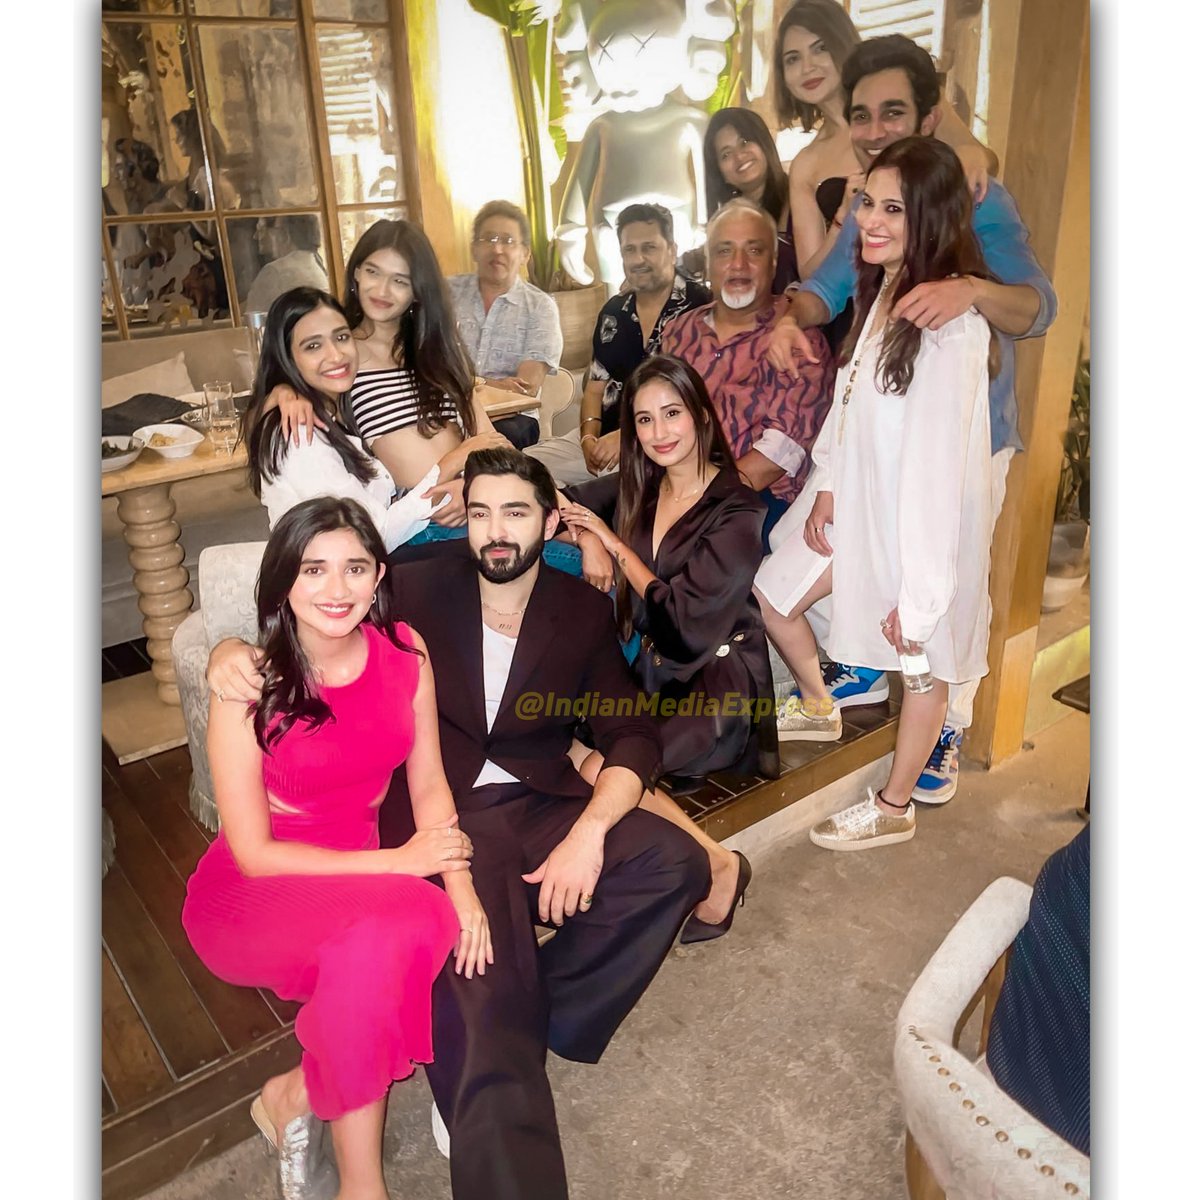 Team bhagyalakshmi
.
.
.
.
.
#Bhagyalakshmiserial #serialfavhotqueens #FamilyAffair #groupphotos #photography #friendship #TrendingNow #viral #teamwork  #post #explorepage #starbarat #tvshow #besttvshow #familyprogram